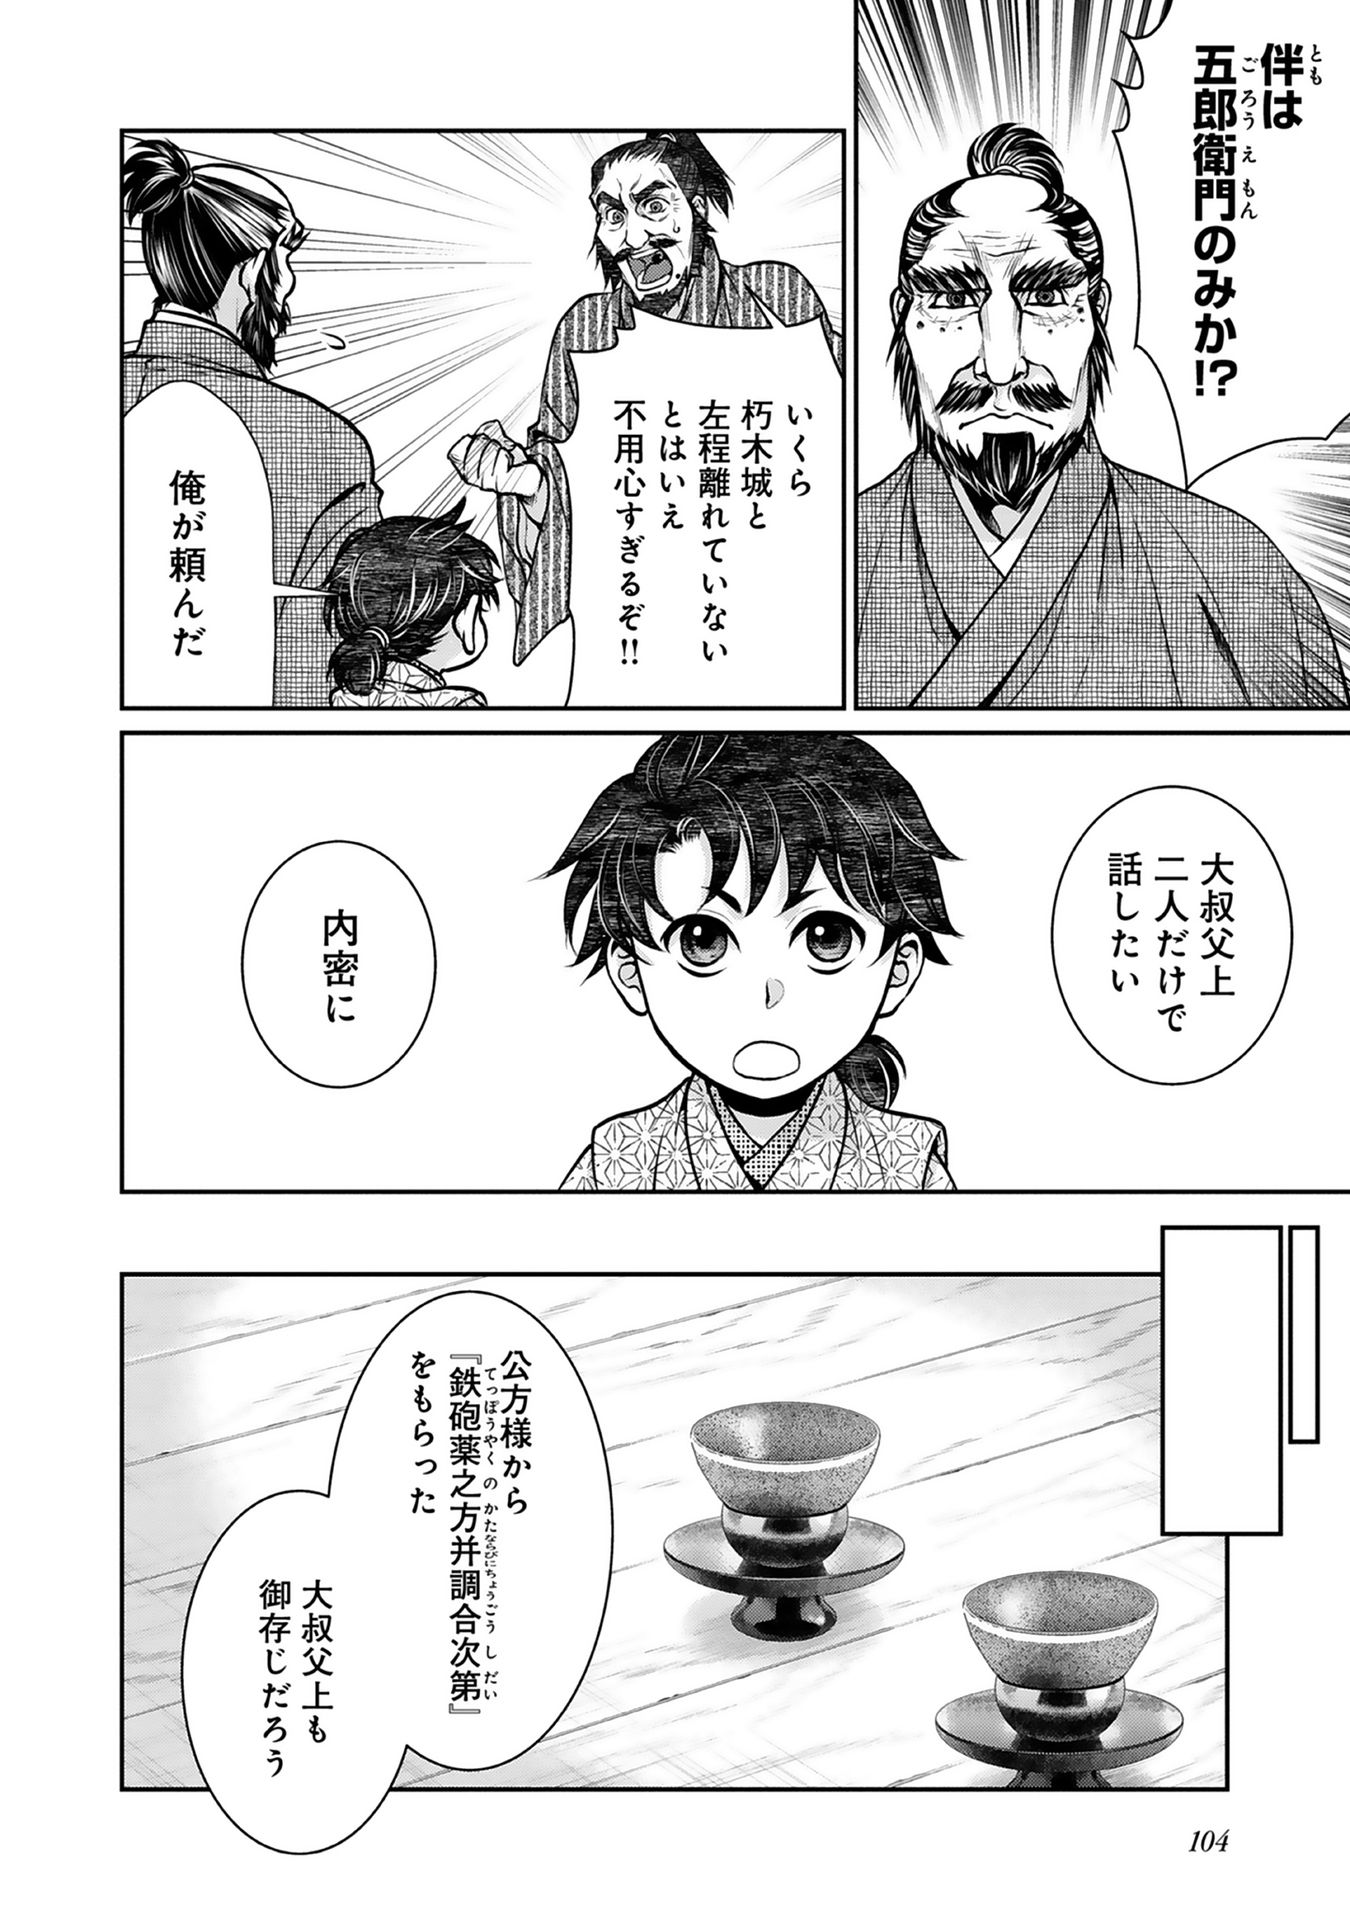 Afumi no Umi – Minamo ga Yureru Toki - Chapter 3 - Page 14